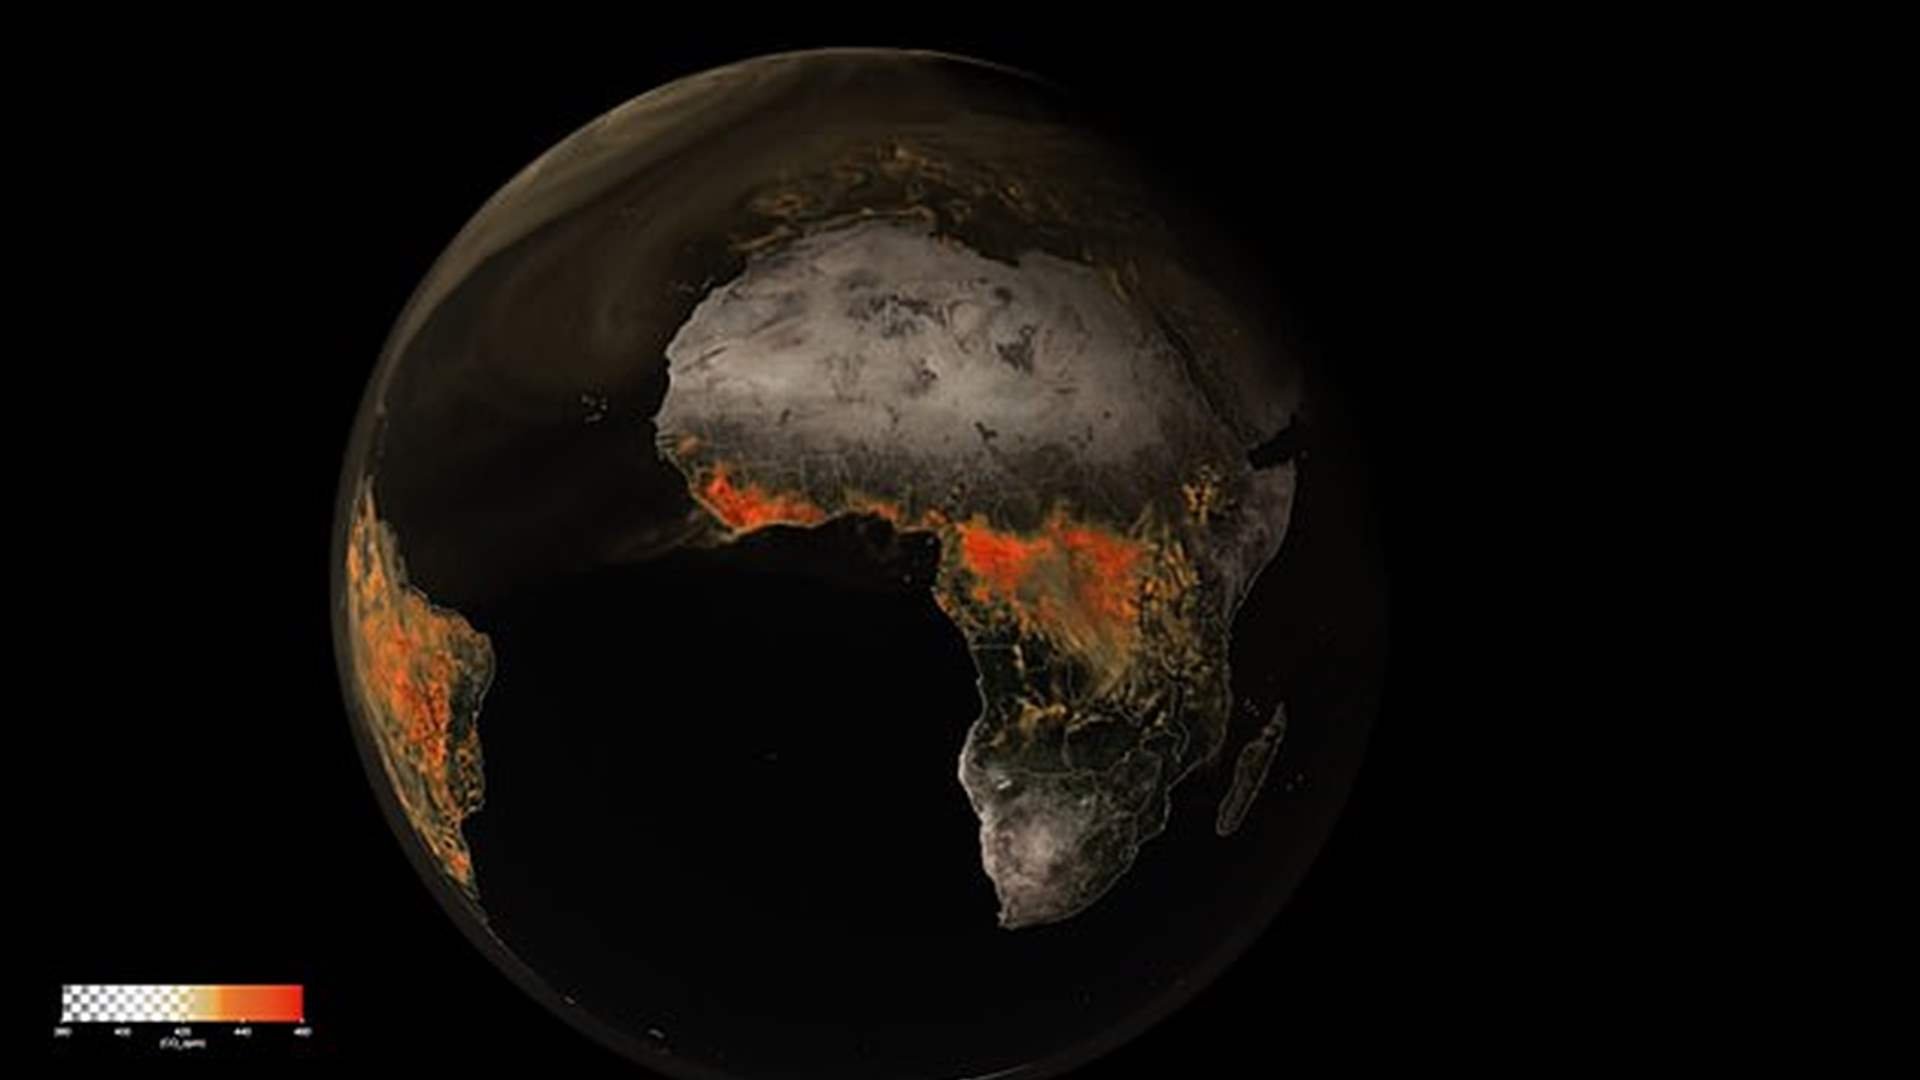 مفاجأة صادمة... ثاني أكسيد الكربون يحوم حول الأرض: هذا ما نشرته ناسا! (فيديو)